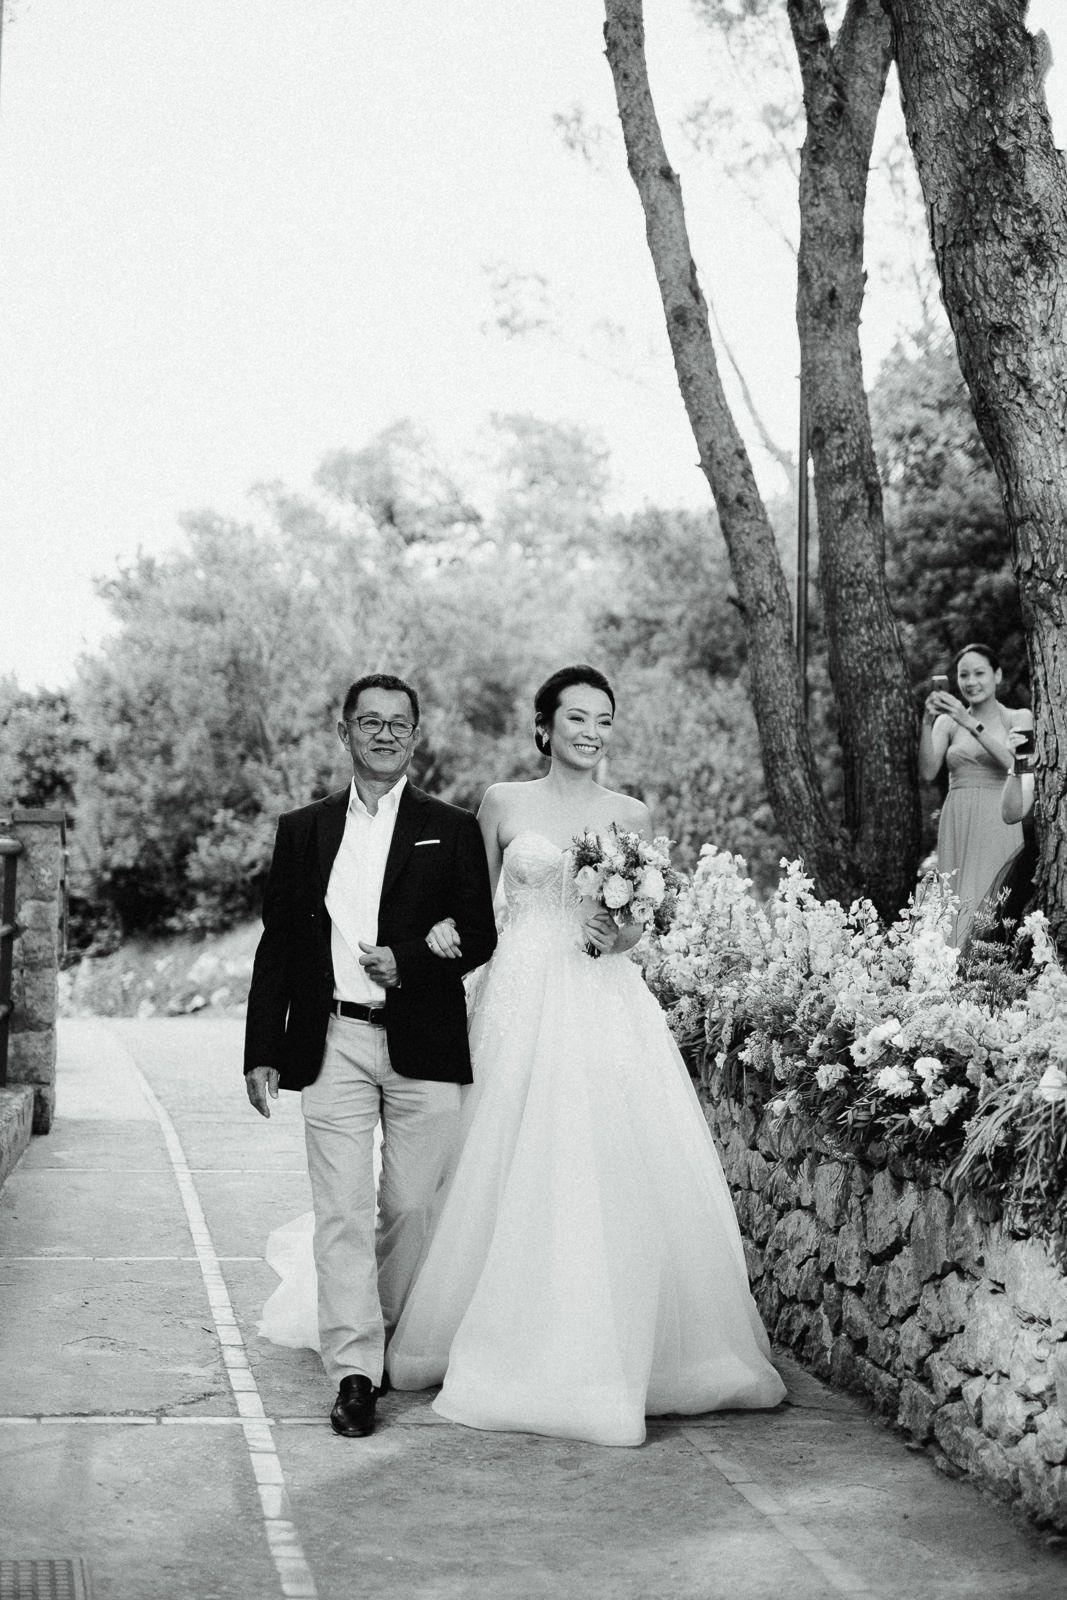 Wedding Ceremony in Capri Island - Wedding in Capri